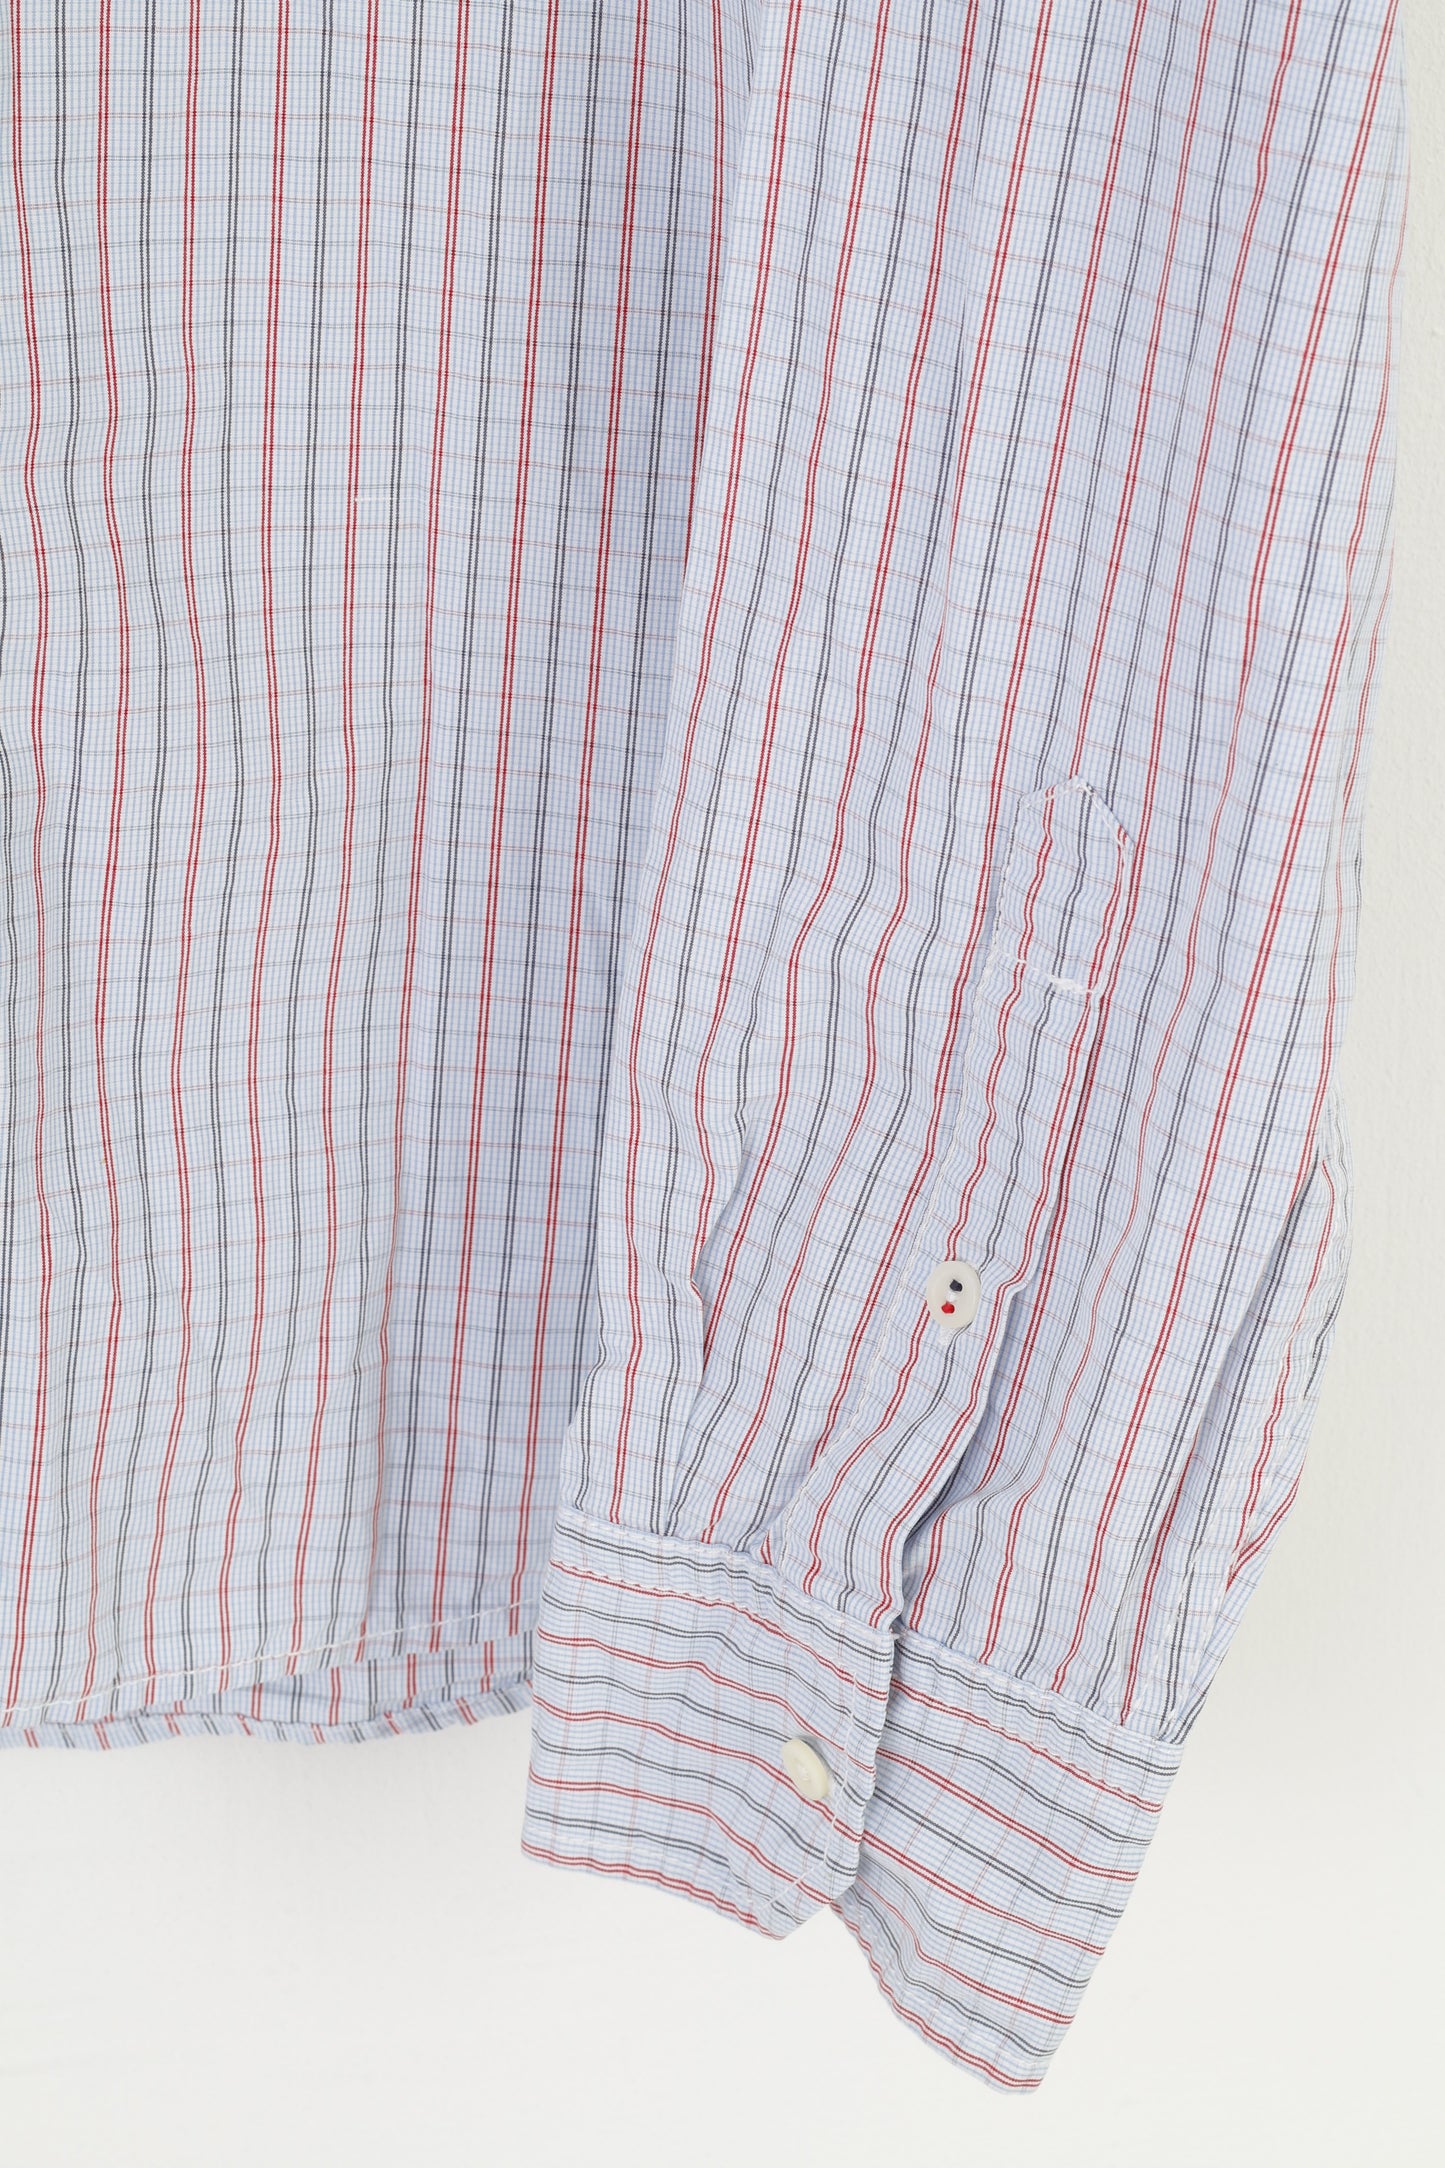 Hilfiger Denim Men XL L Casual Shirt Checkered Long Sleeve Cotton Blue Top